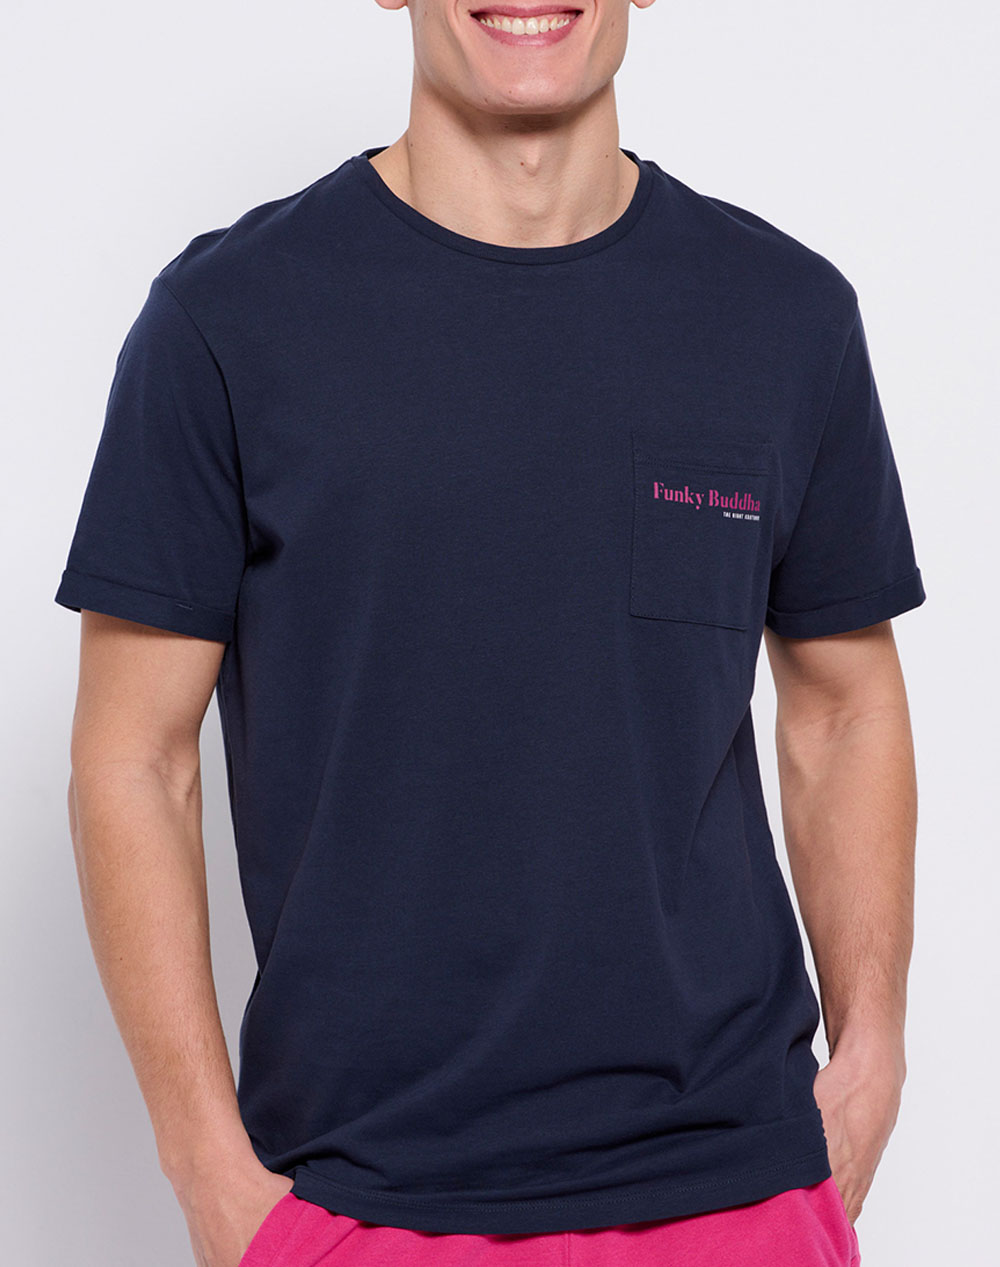 FUNKY BUDDHA Βαμβακερό t-shirt με τσέπη στο στήθος FBM007-011-04-NAVY NavyBlue 3620PFUNK3400124_6131